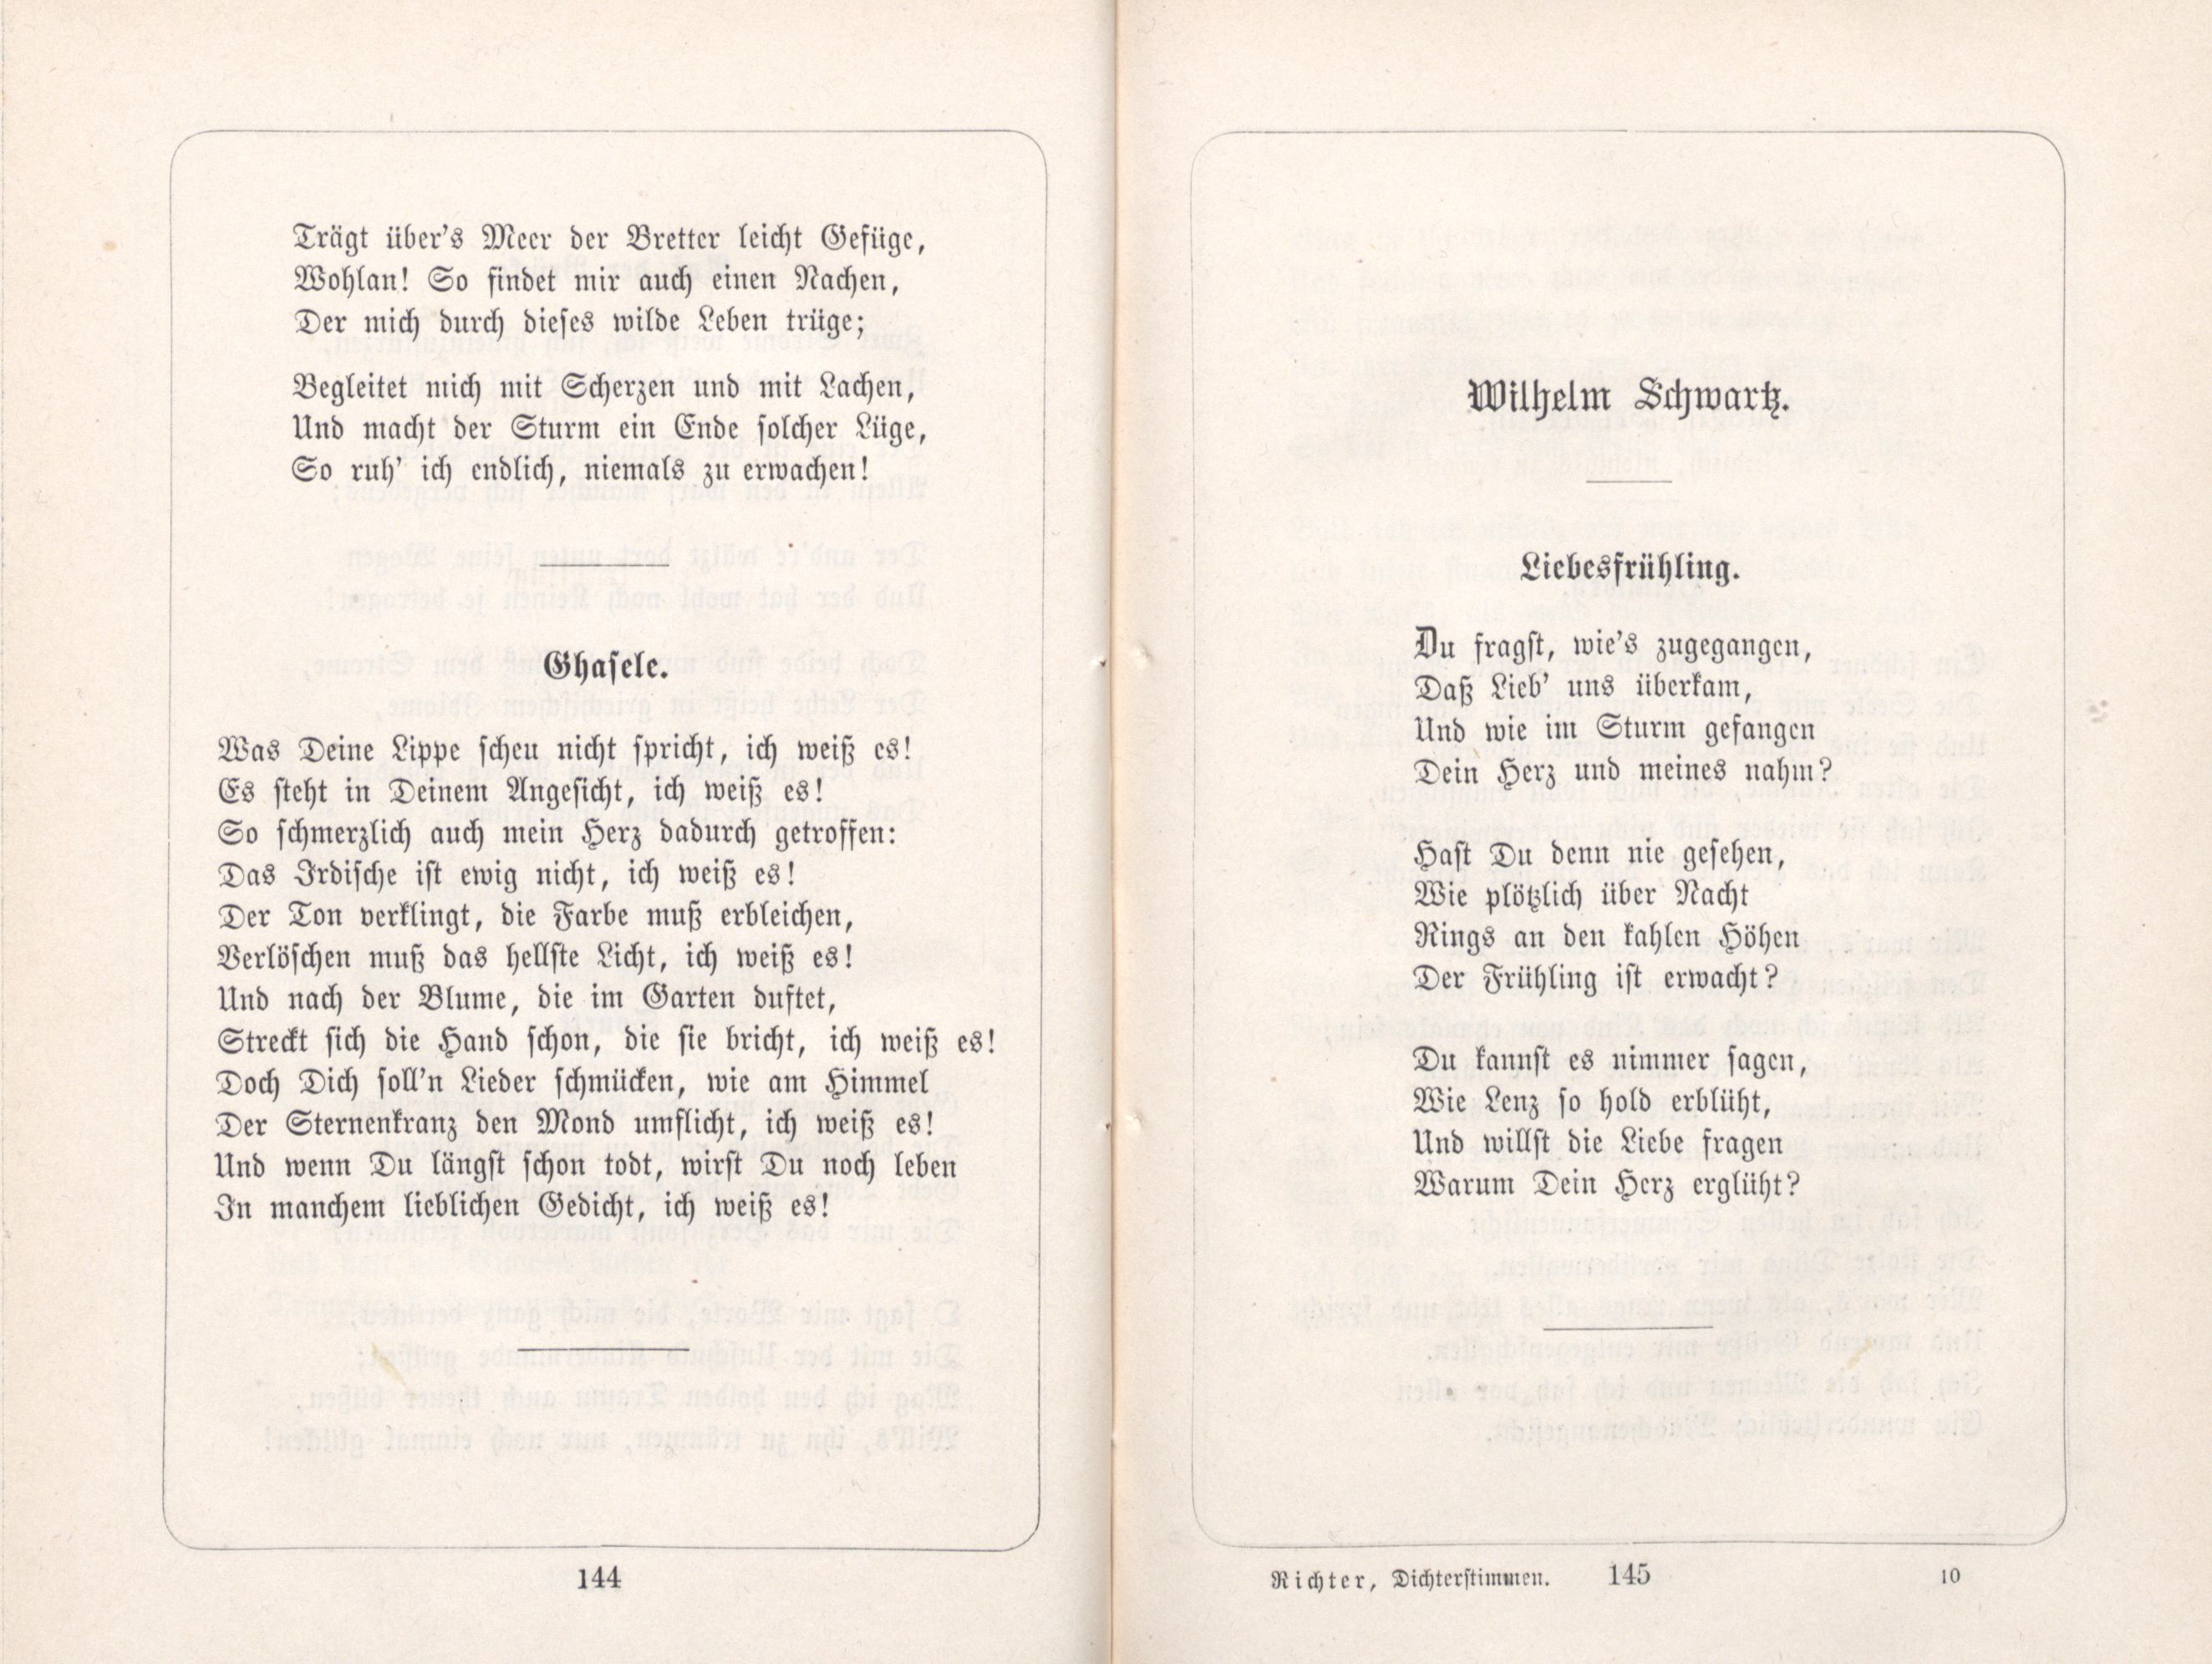 Liebesfrühling (1885) | 1. (144-145) Haupttext